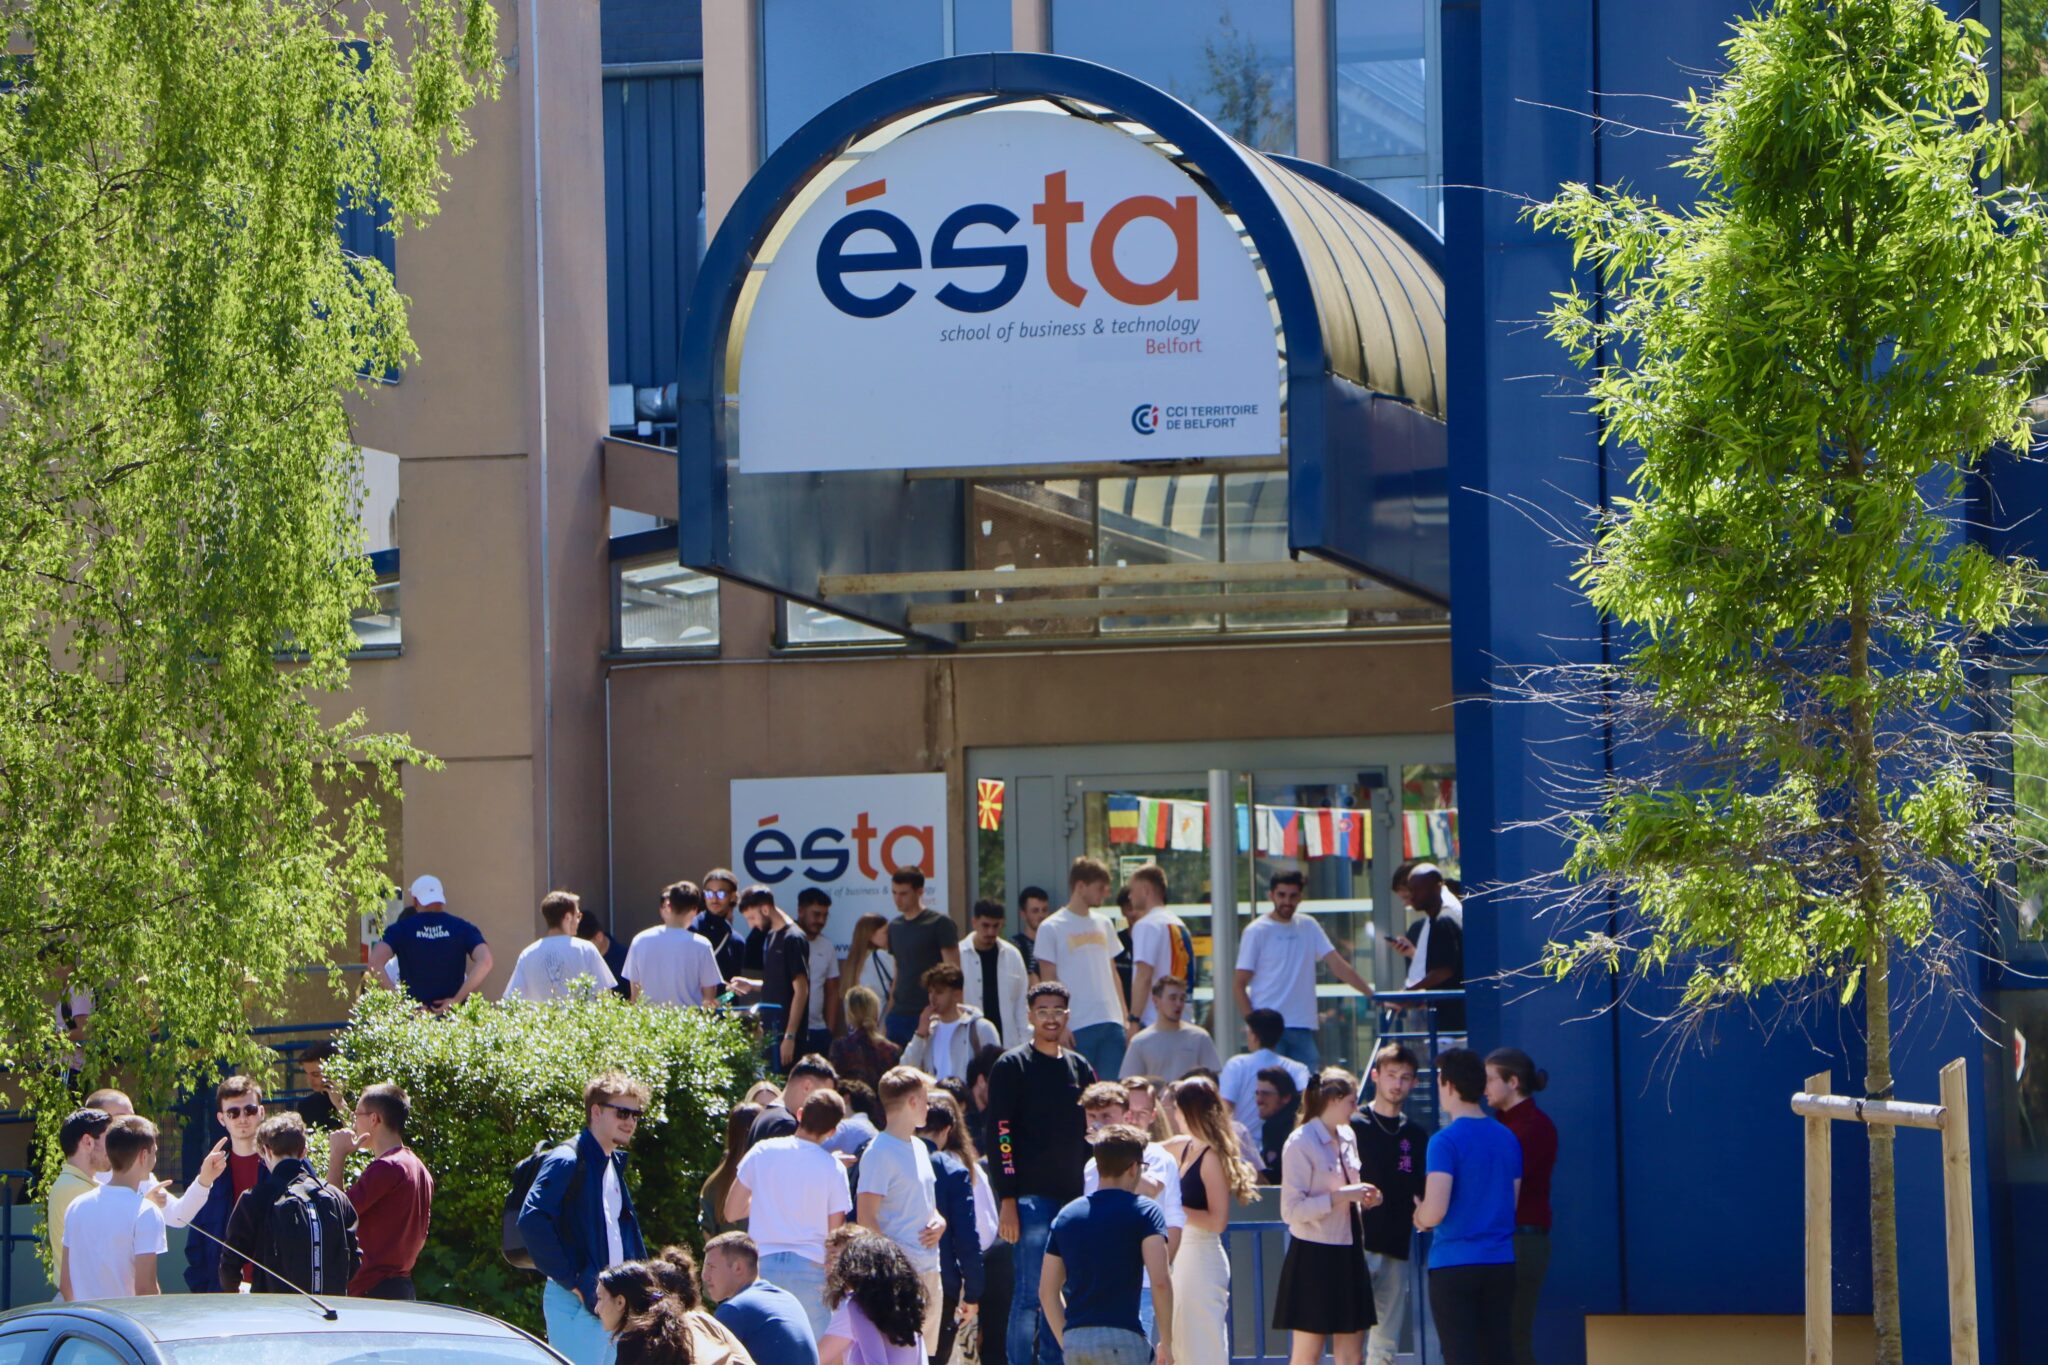 Etudiants et étudiantes devant l'entrée de l'ESTA, école d'ingénieur commercial.